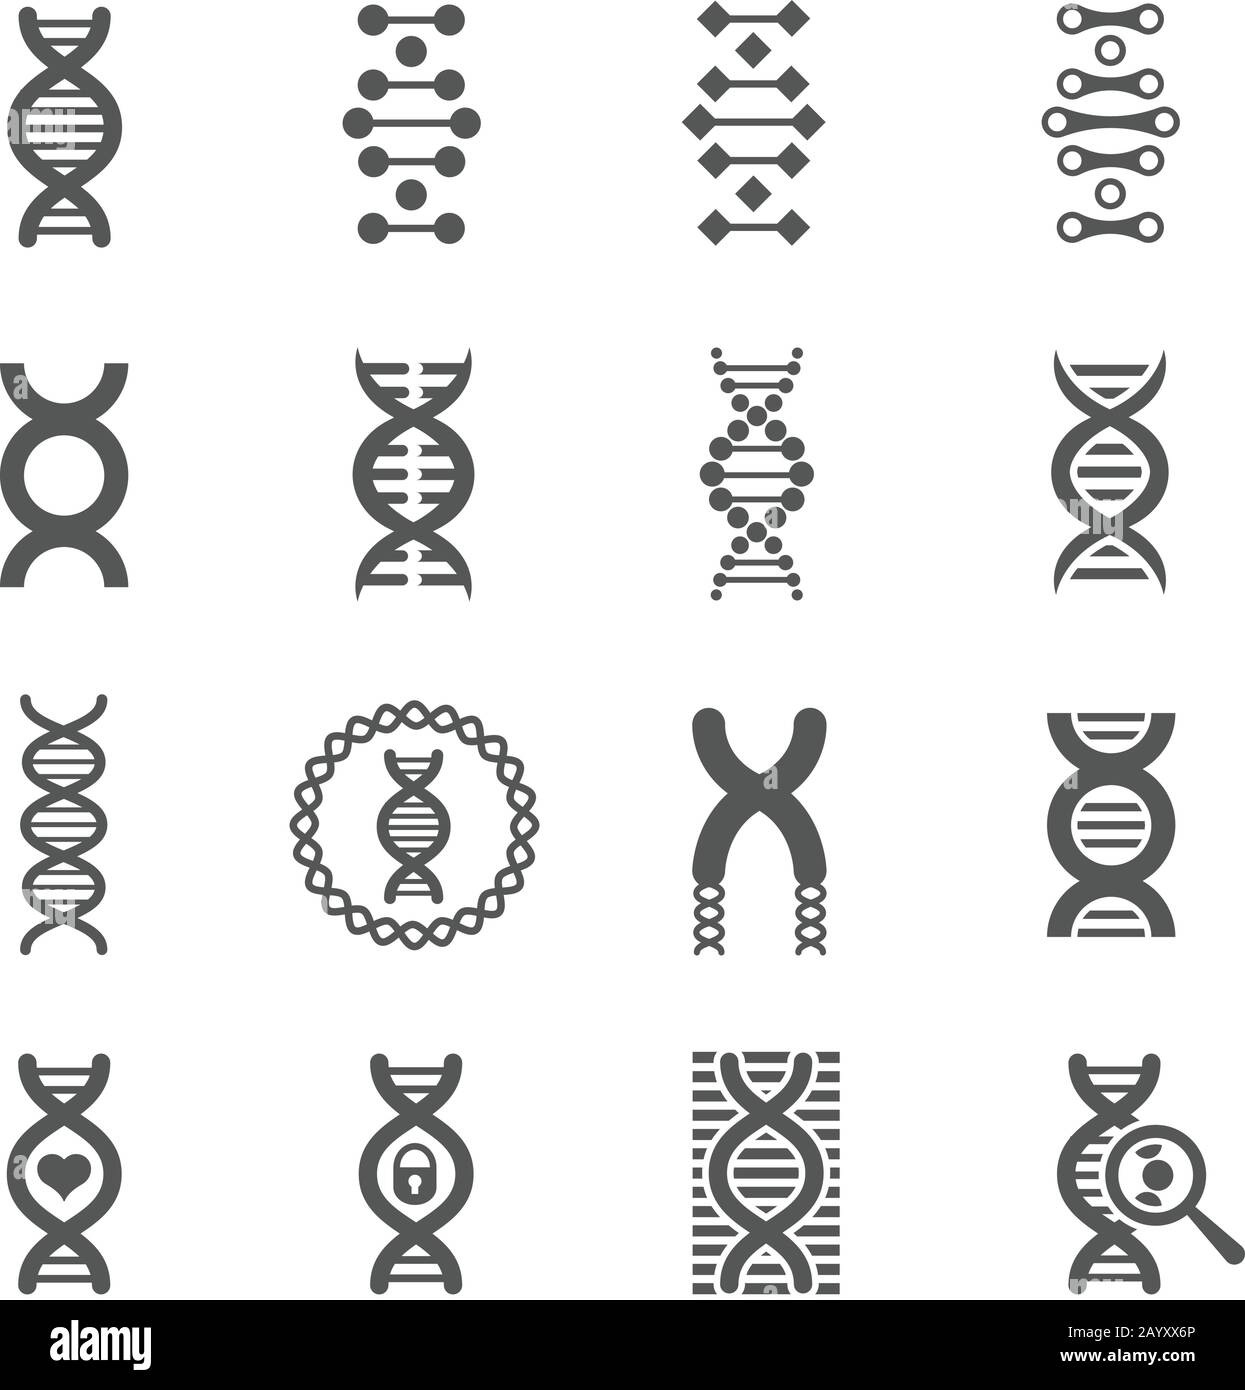 Icônes noires vectorielles en spirale d'ADN. Biologie signes génétiques et symboles de molécules d'adn pour la chimie ou la biologie Illustration de Vecteur